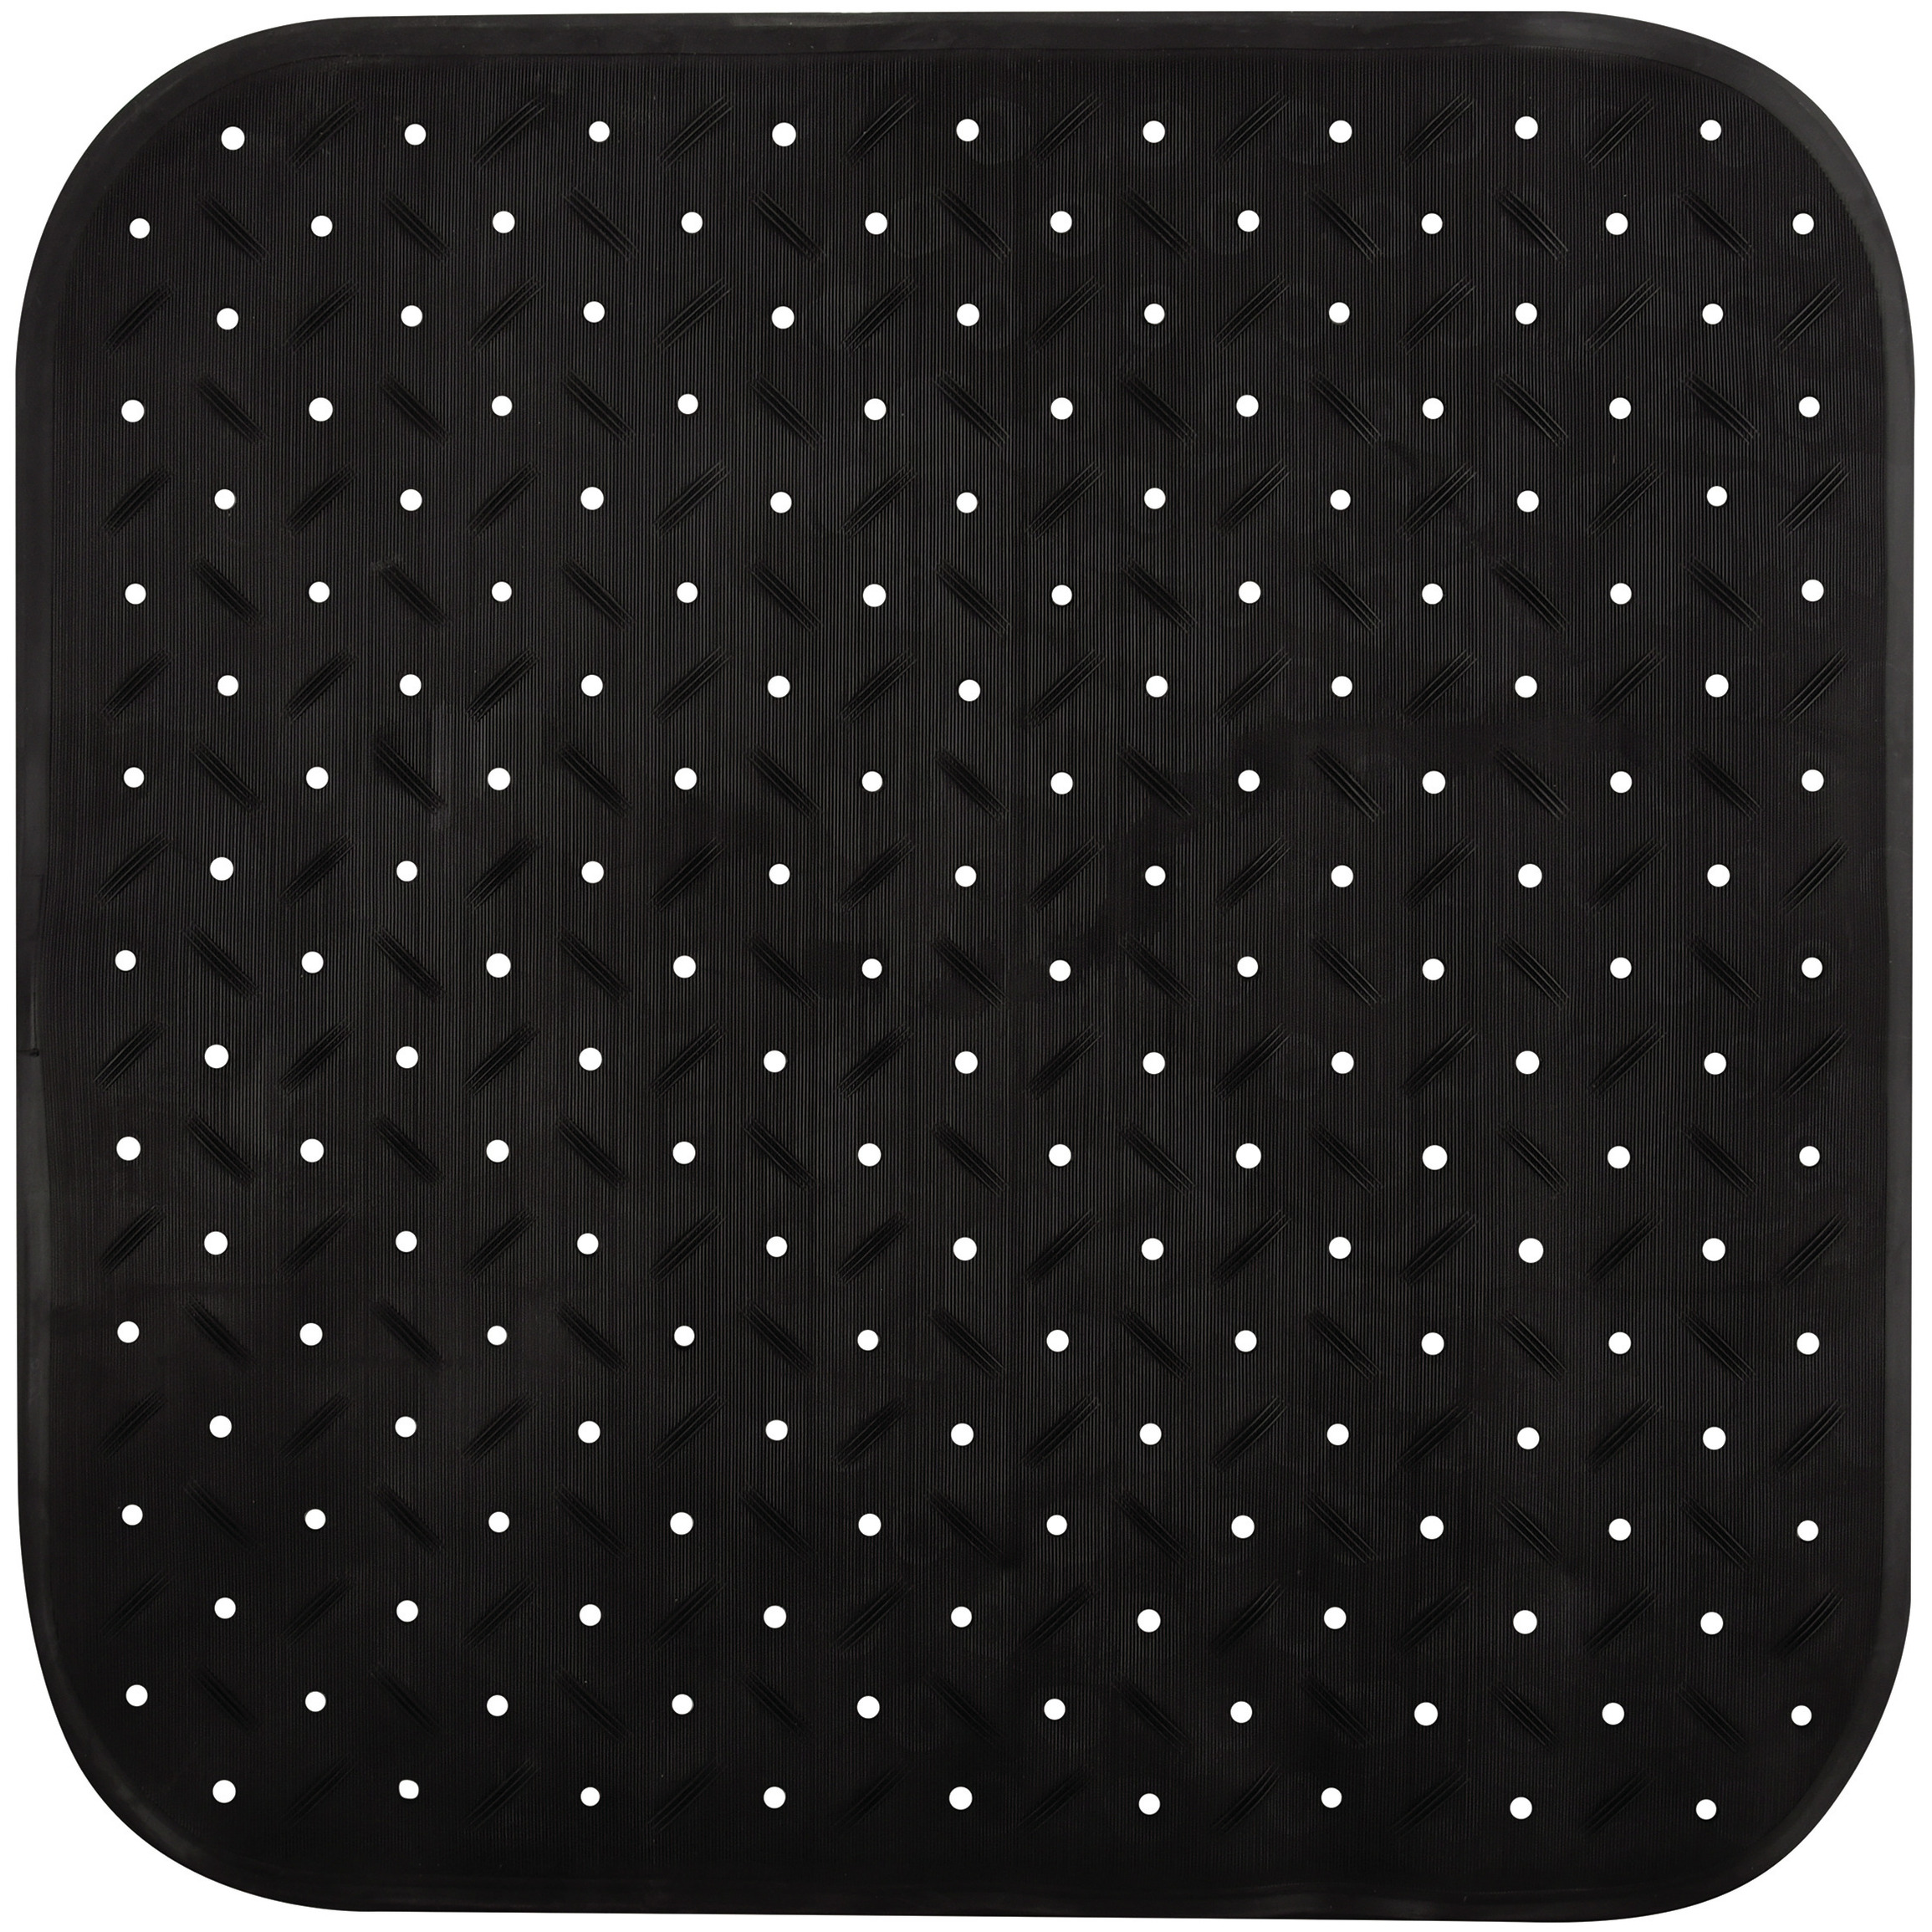 MSV Douche-bad anti-slip mat badkamer rubber zwart 54 x 54 cm